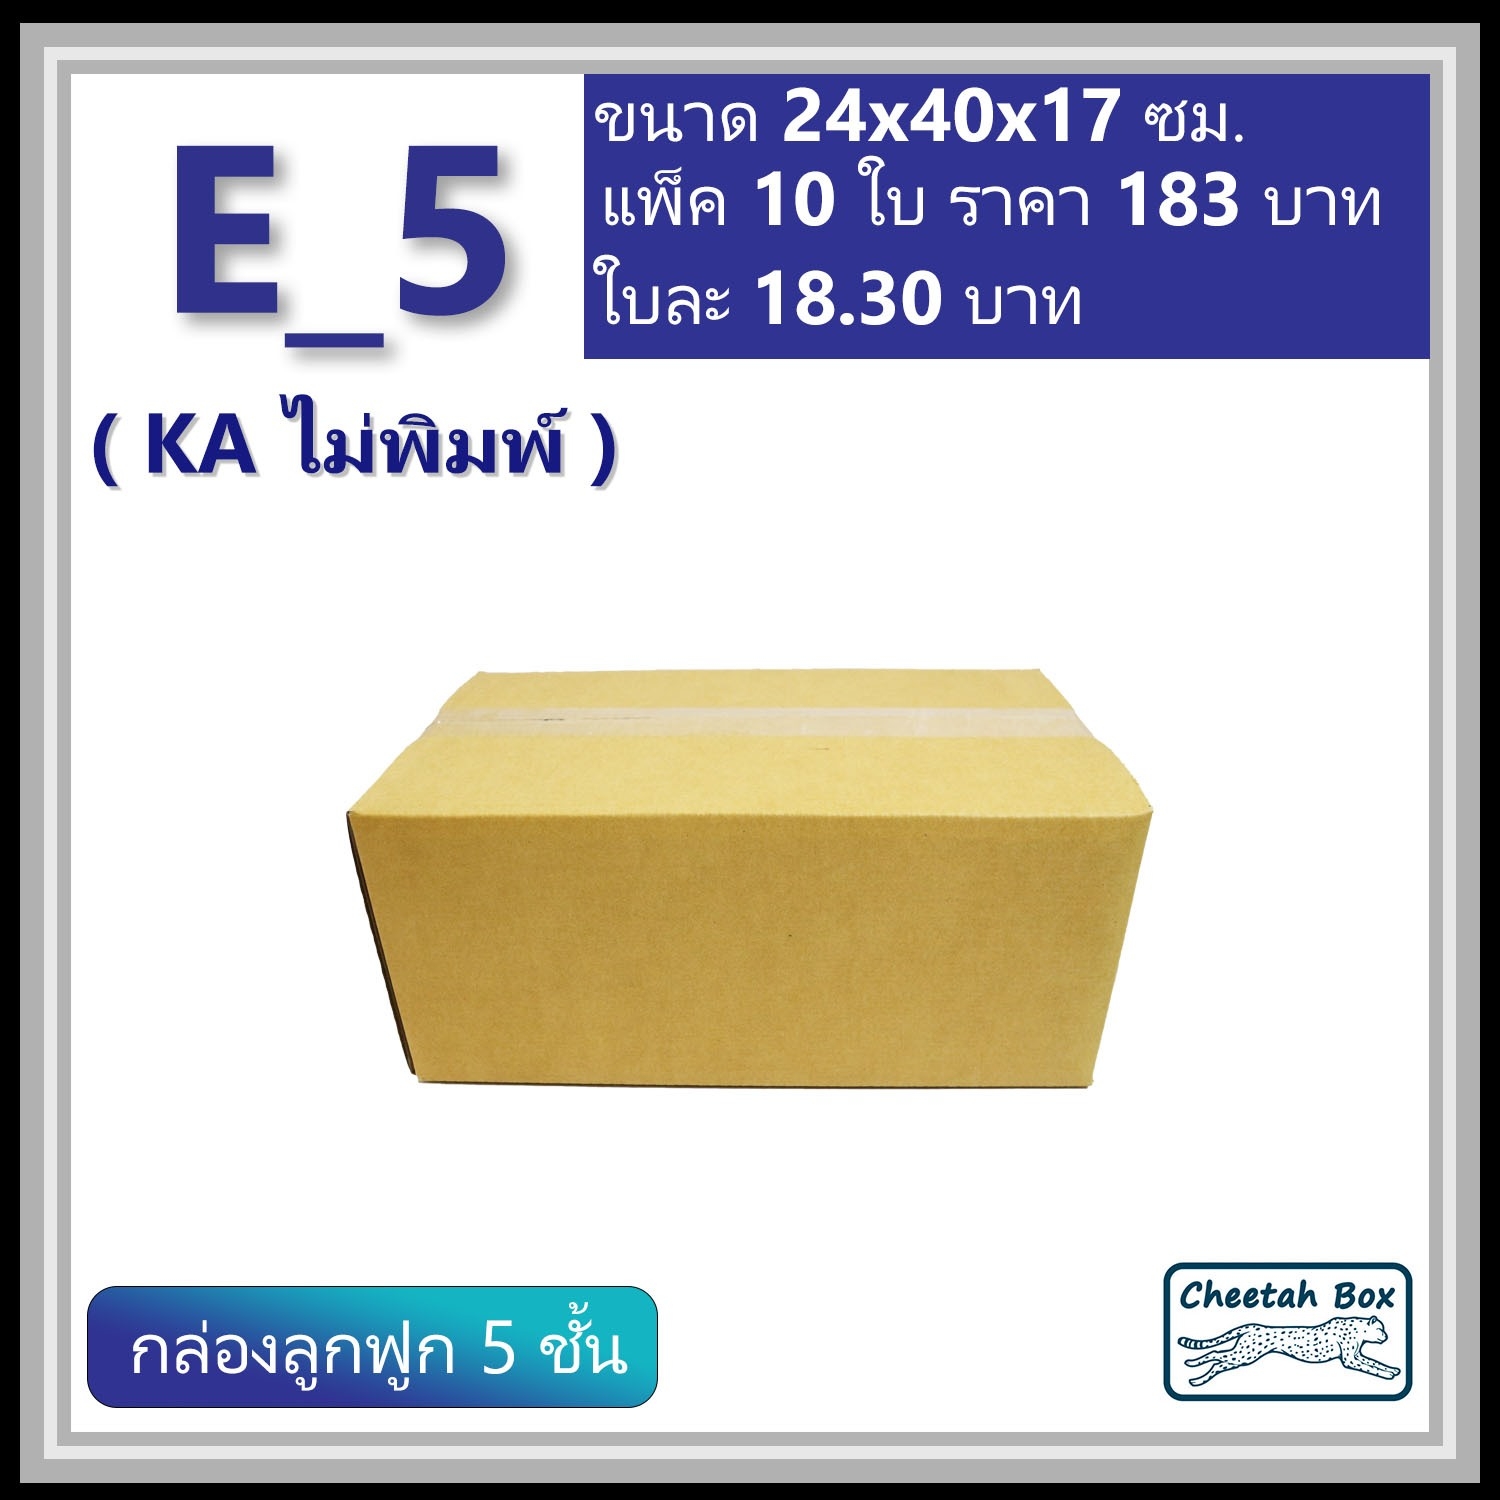 กล่องพัสดุ 5 ชั้น E_5 (จ) (KA125) เคลือบกันชิ้น พิมพ์ลาย ลูกฟูก 5 ชั้น (Cheetah Box ขนาด 24*40*17 CM)